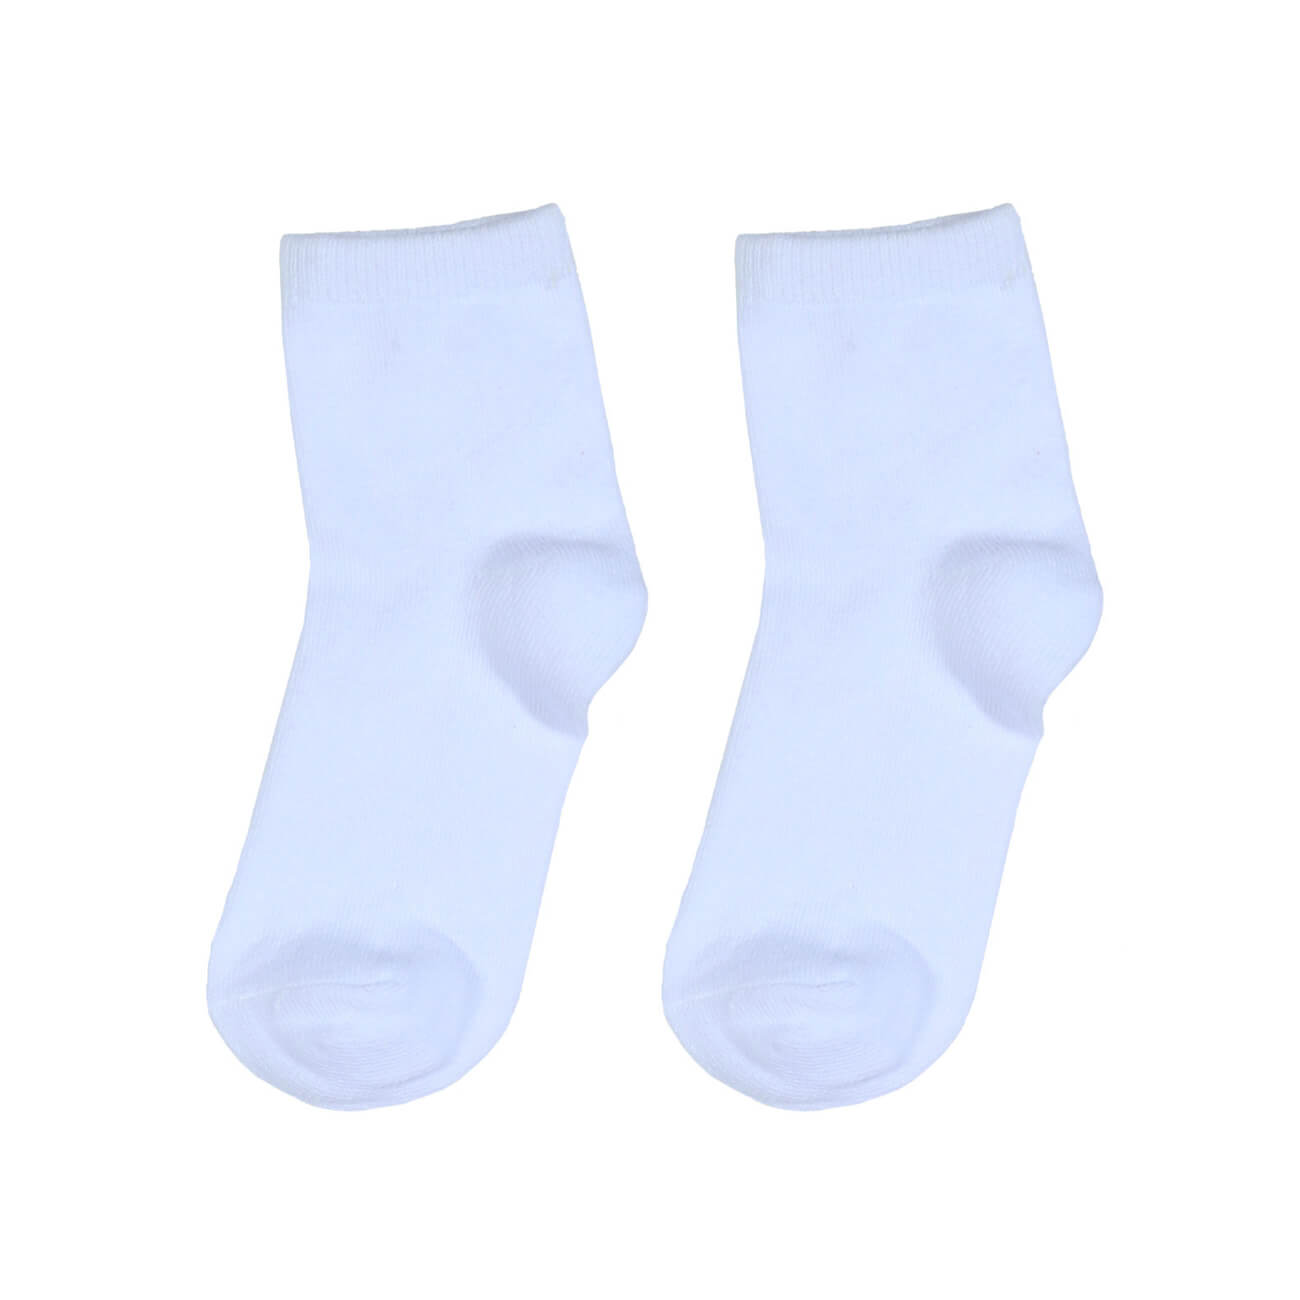 Носки детские, р. 23-26, хлопок/полиэстер, белые, Basic носки следки мужские р 43 46 хлопок полиэстер черные basic